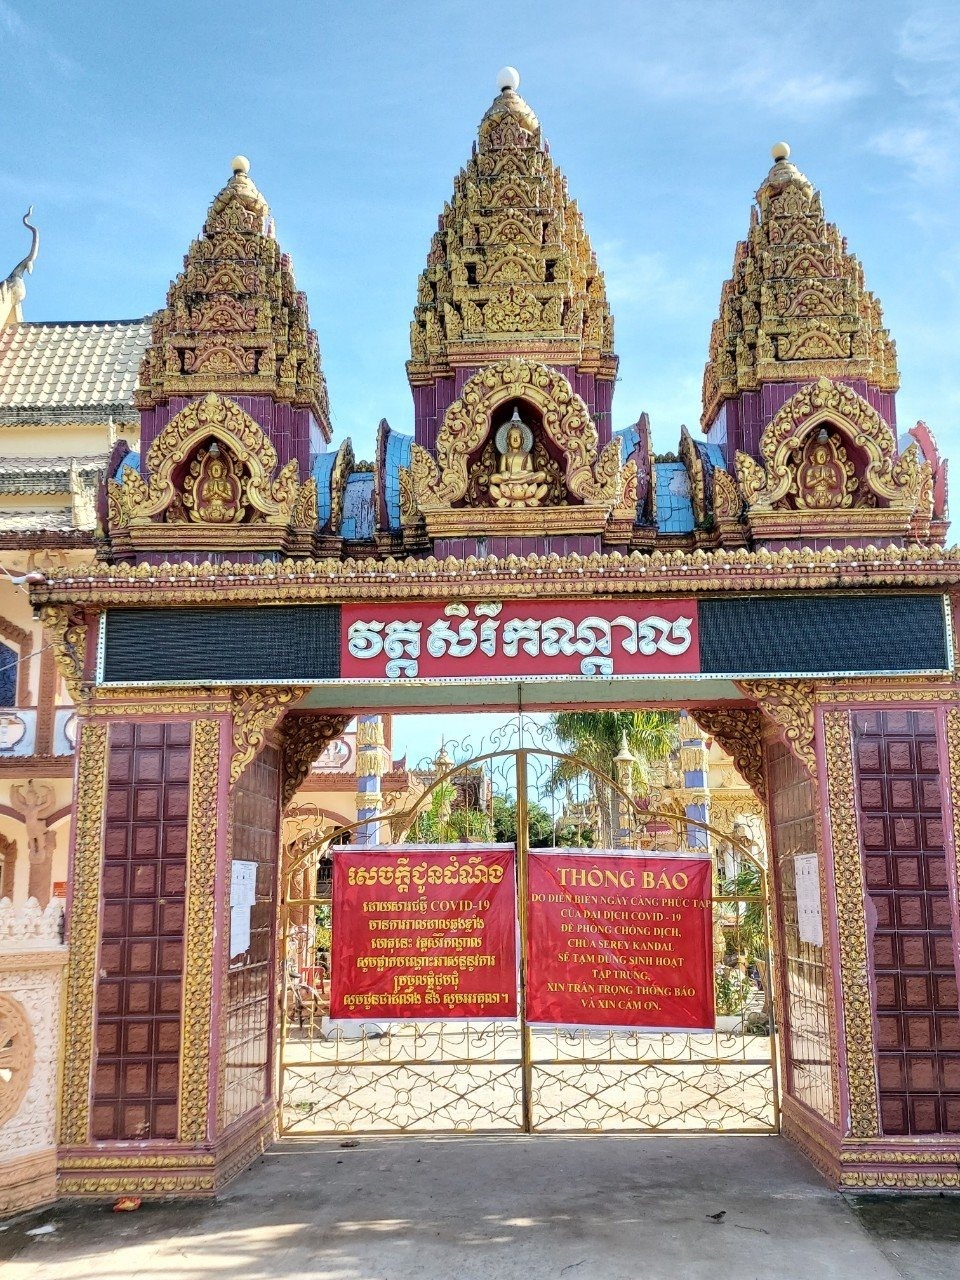 Tại vùng ĐBSCL, 2 tỉnh Trà Vinh và Sóc Trăng có tỉ lệ đồng bào Khmer chiếm hơn 30%. Riêng tỉnh Trà Vinh có dân số hơn 1 triệu người, trong đó gần 32% là đồng bào Khmer. Năm nay, do ảnh hưởng của dịch COVID-19, Hội Ðoàn kết sư sãi yêu nước tỉnh này đã thông báo, yêu cầu Hội Ðoàn kết sư sãi yêu nước 8 huyện, thành phố, các vị sư cả, Ban quản trị, chư tăng và phật tử 143 chùa Phật giáo Nam tông Khmer trong tỉnh tinh gọn các nghi lễ, hạn chế một số hoạt động không cần thiết để phòng, chống dịch, bảo vệ sức khỏe của bản thân và cộng đồng.